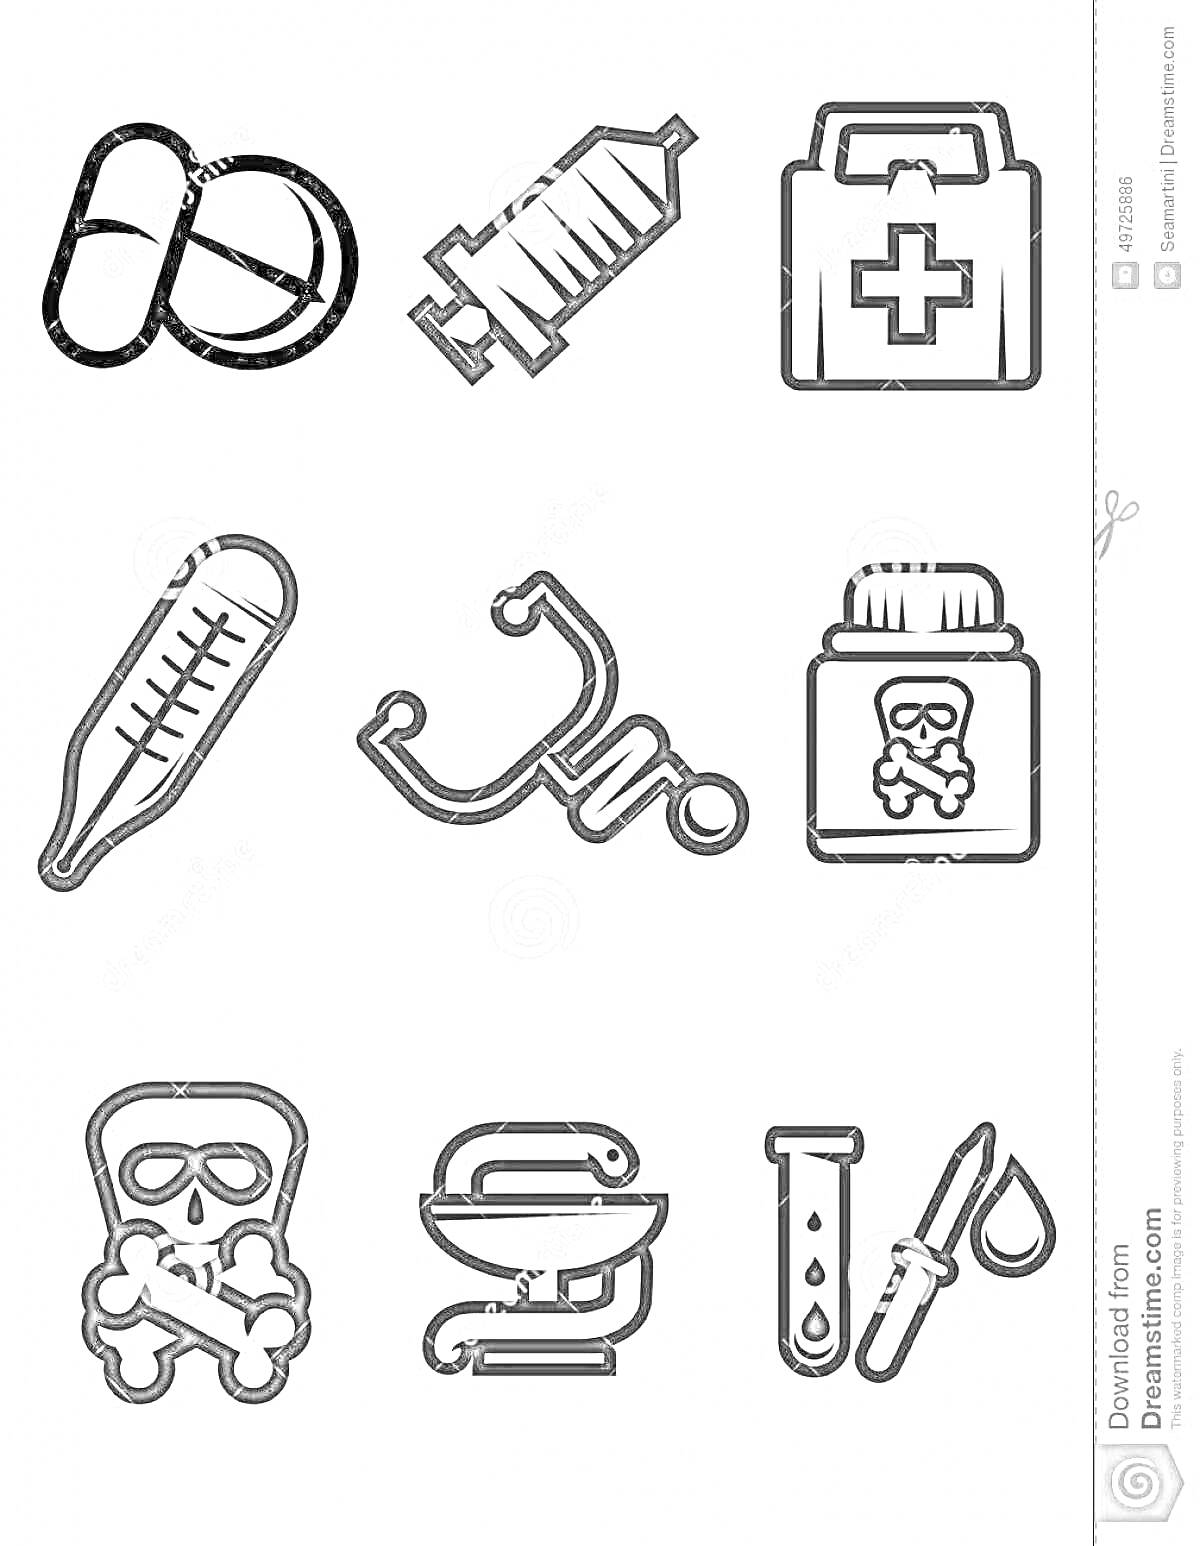 Раскраска с медицинскими инструментами для детей - таблетки, шприц, медицинская аптечка, термометр, стетоскоп, банка с ядом, знак опасности, чаша Гигеи, пробирка с пипеткой